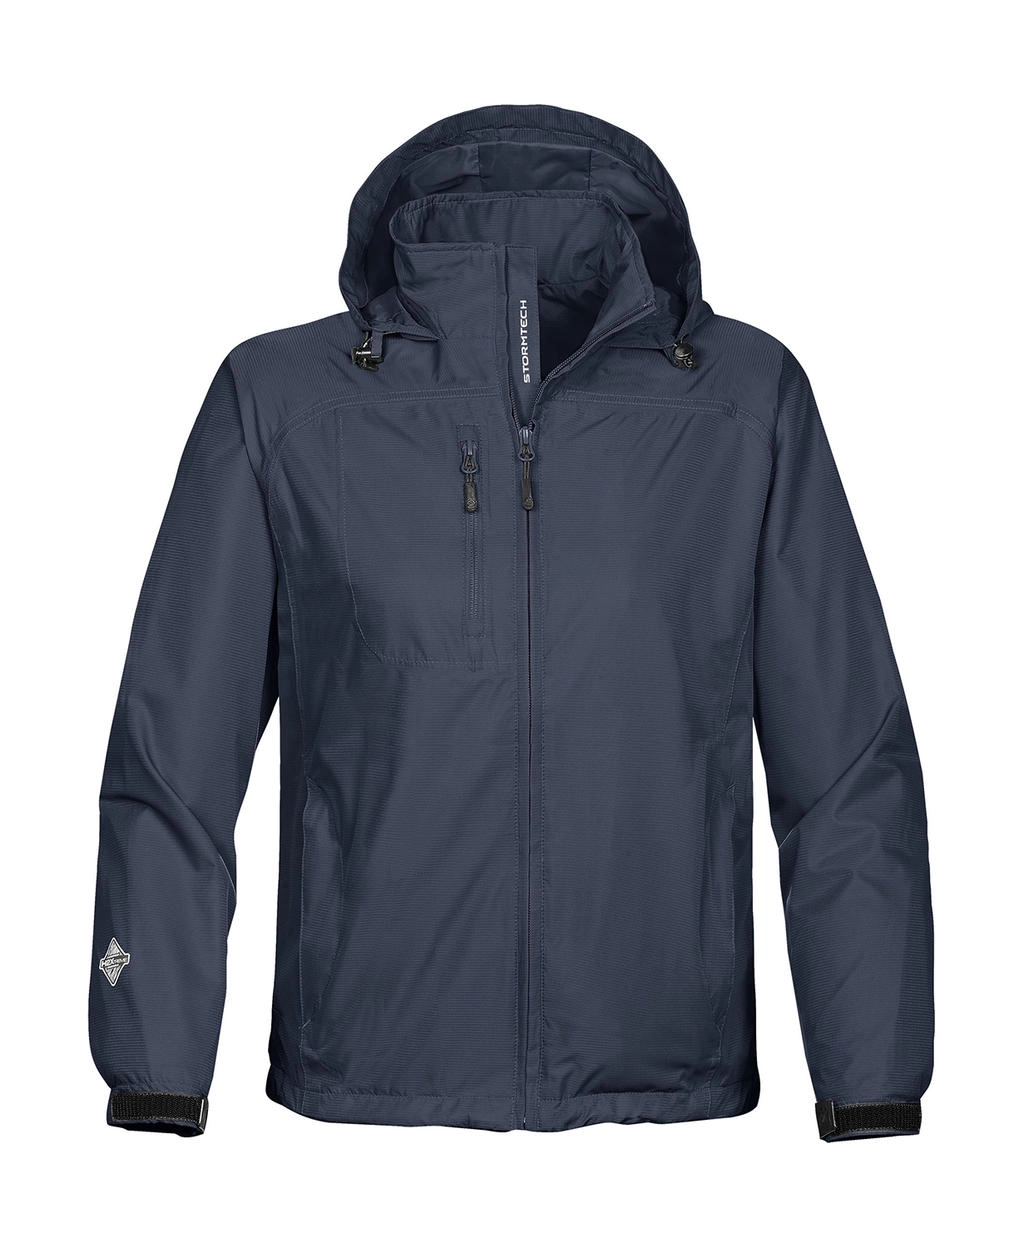 Stratus Light Shell Jacket zum Besticken und Bedrucken in der Farbe Navy mit Ihren Logo, Schriftzug oder Motiv.